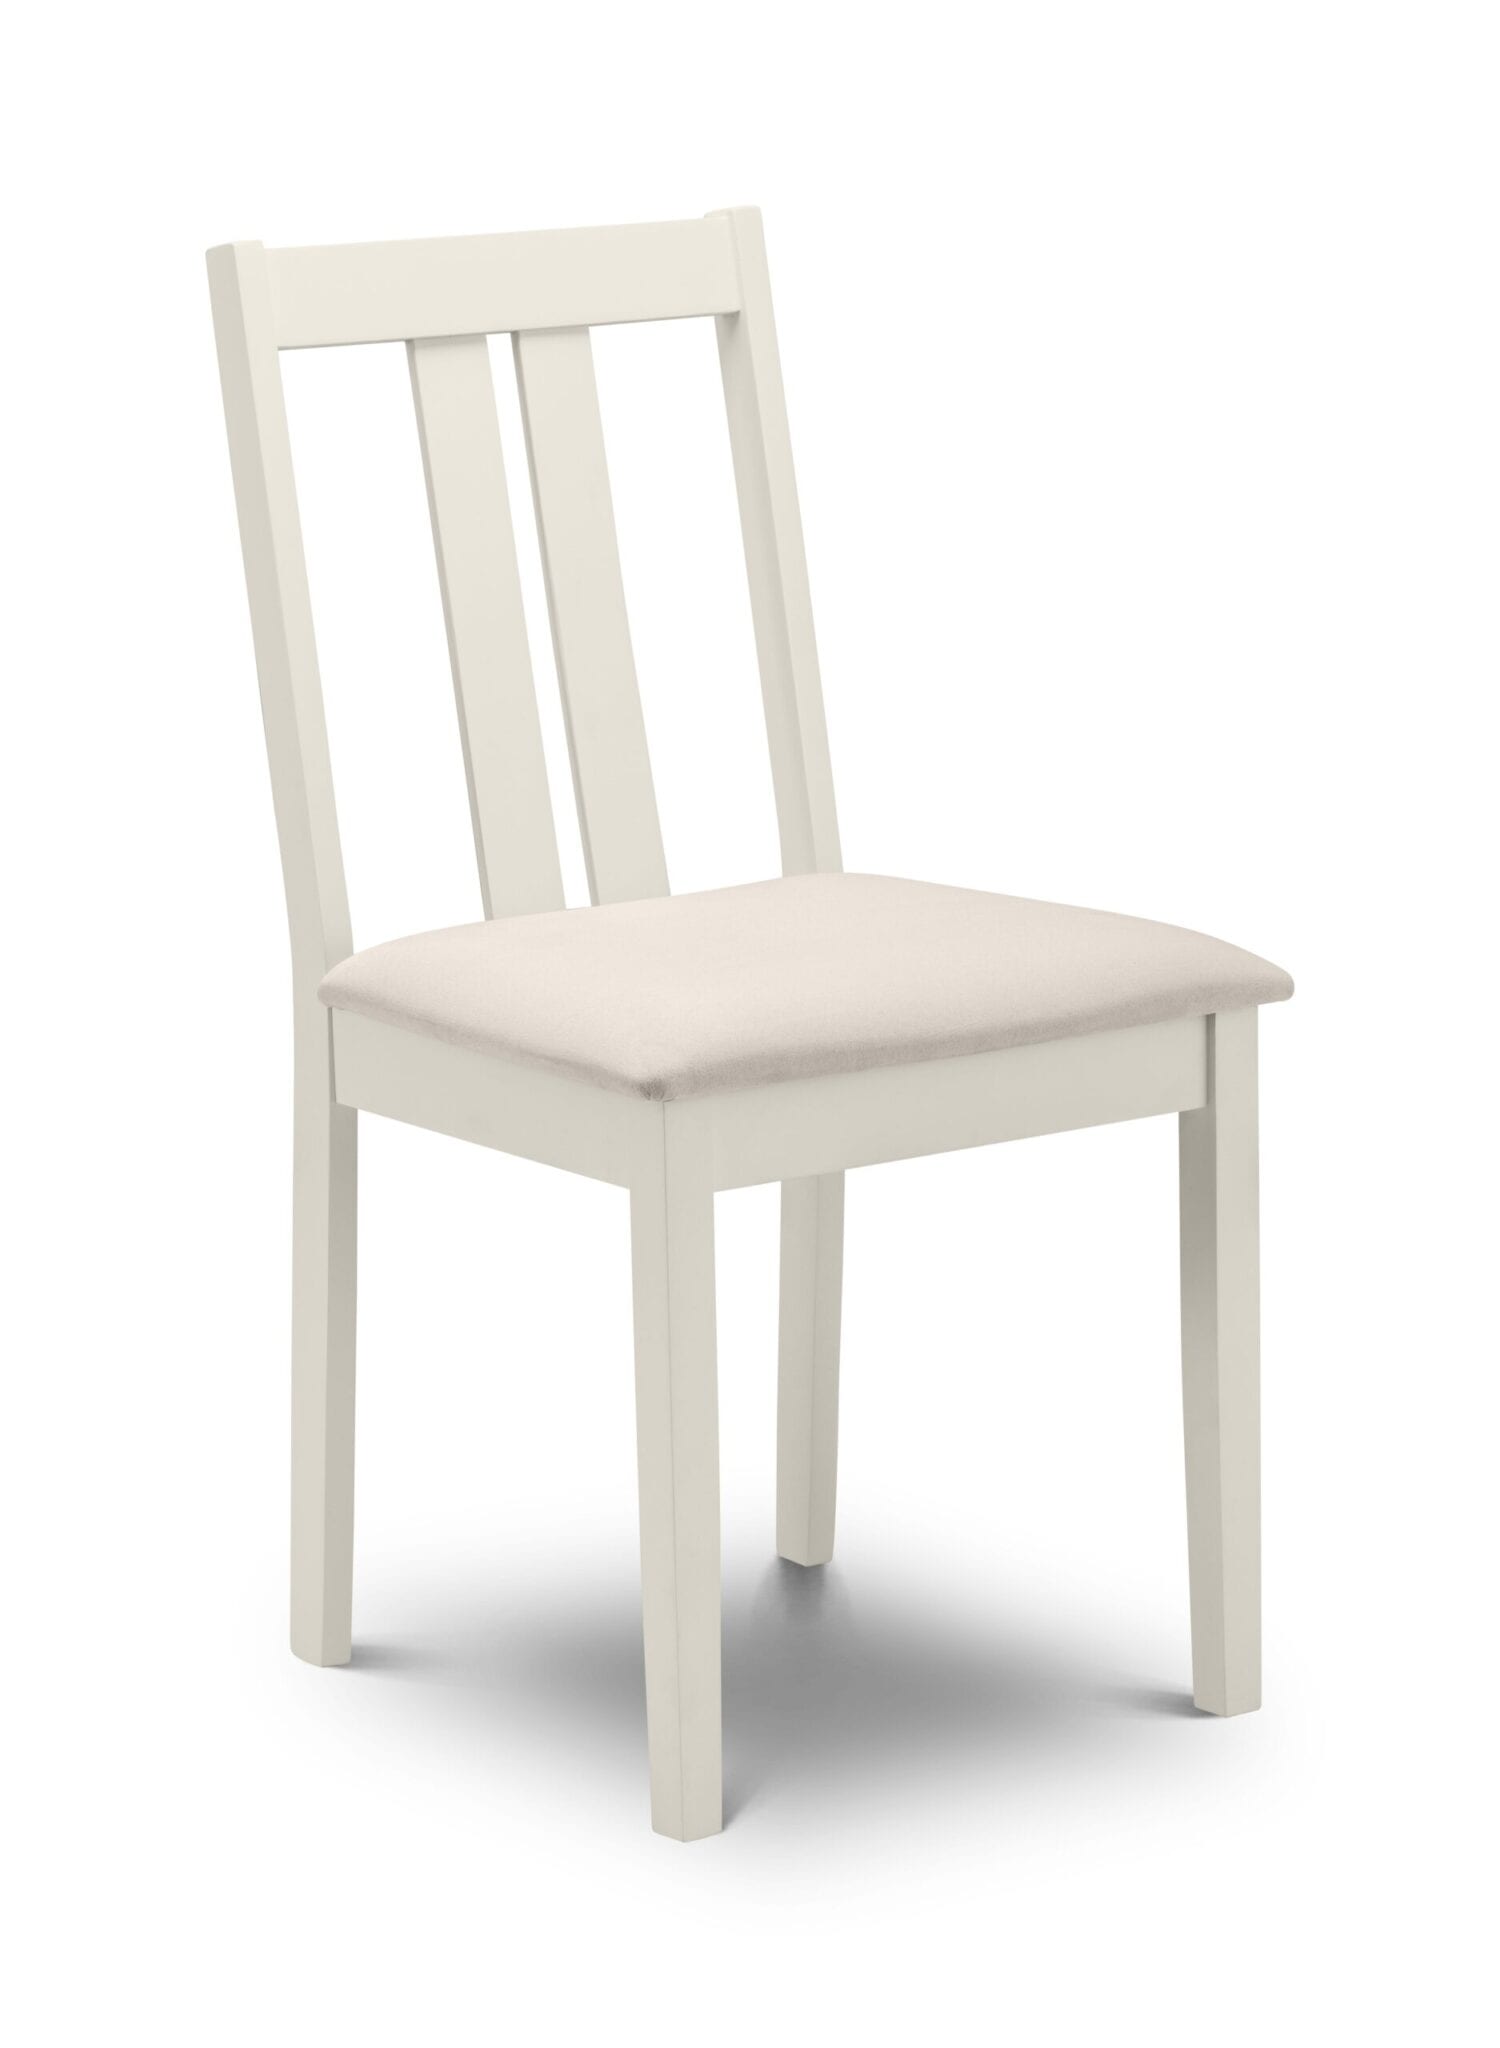 Trafford Chair Ivory